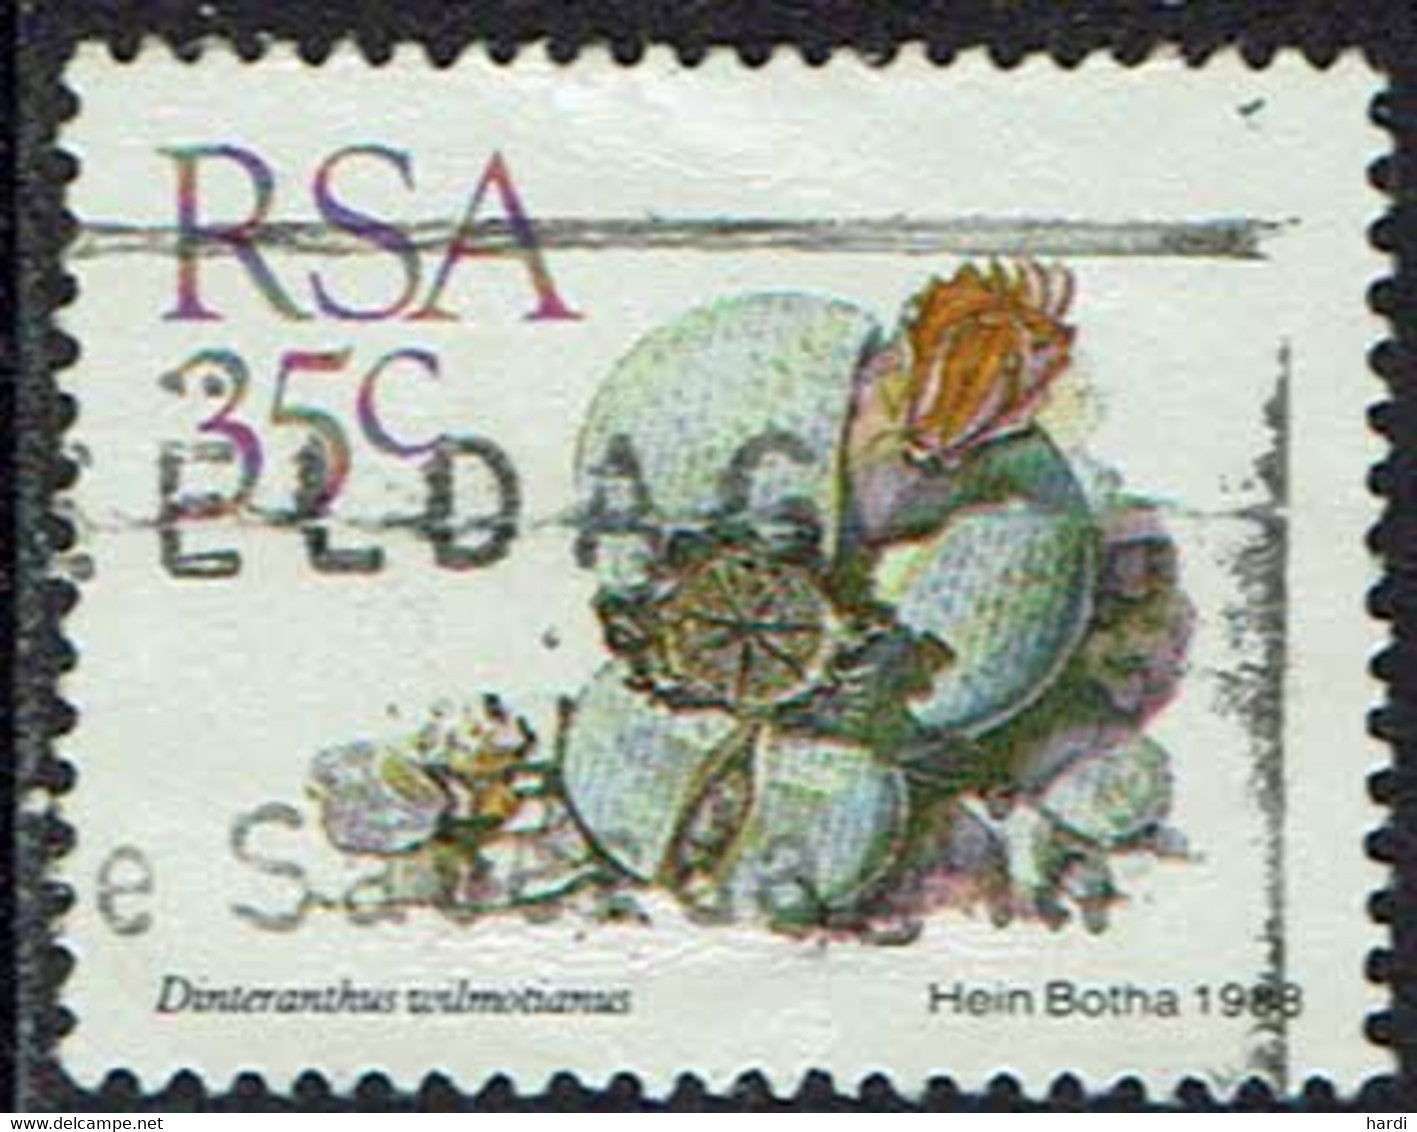 Südafrika 1988, MiNr 752, Gestempelt - Used Stamps